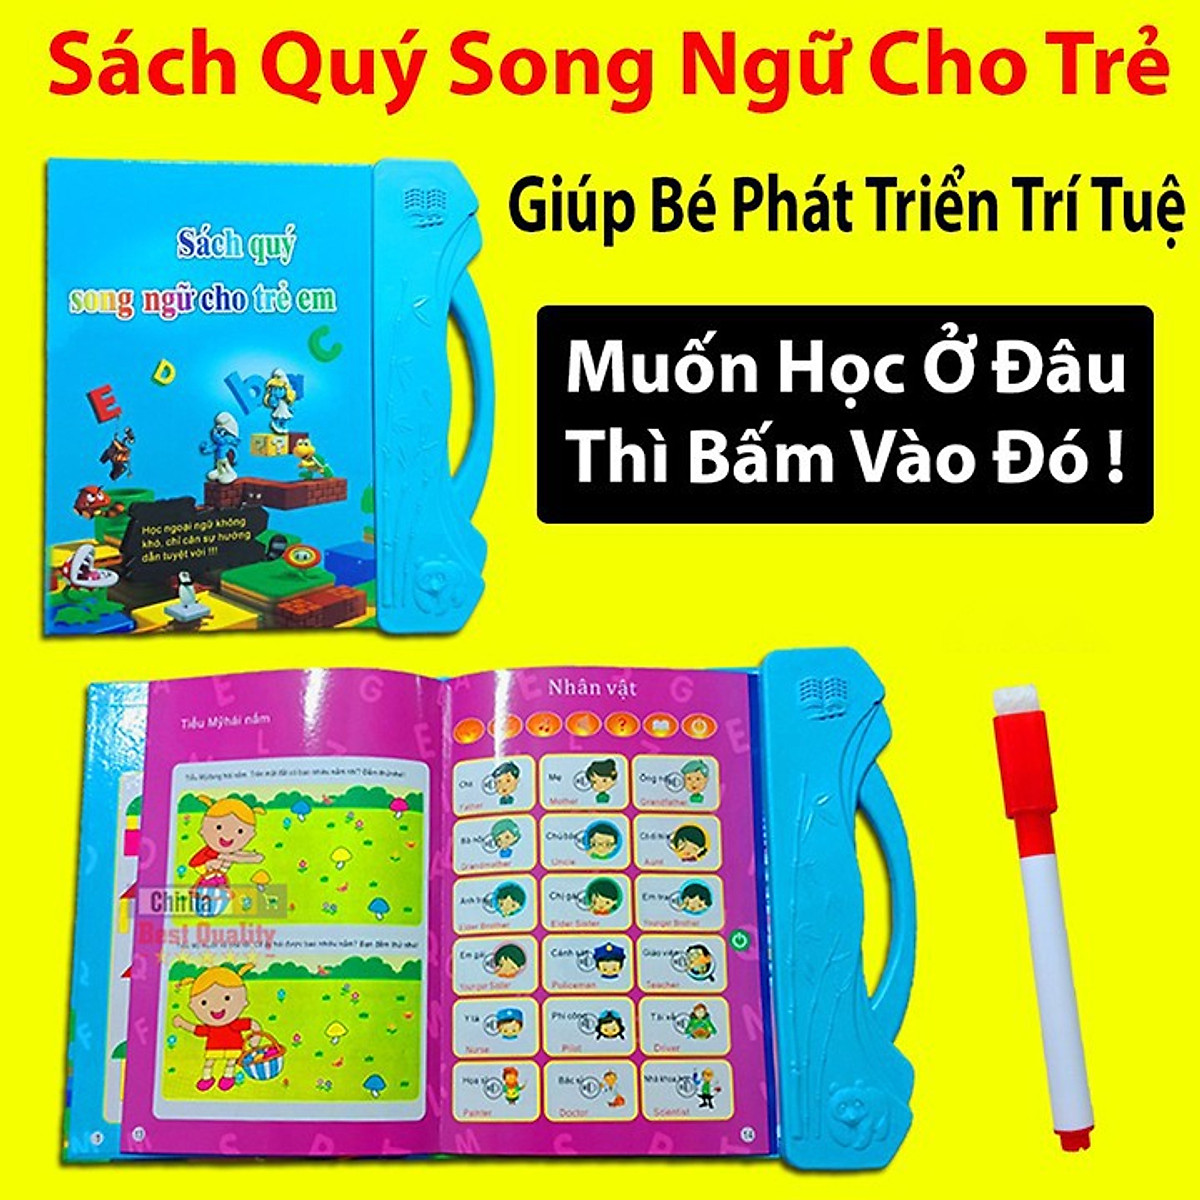 Sách nói điện tử song ngữ trẻ em (Bản nâng cấp 1+) - Sách quý điện tử song ngữ Anh – Việt cho bé